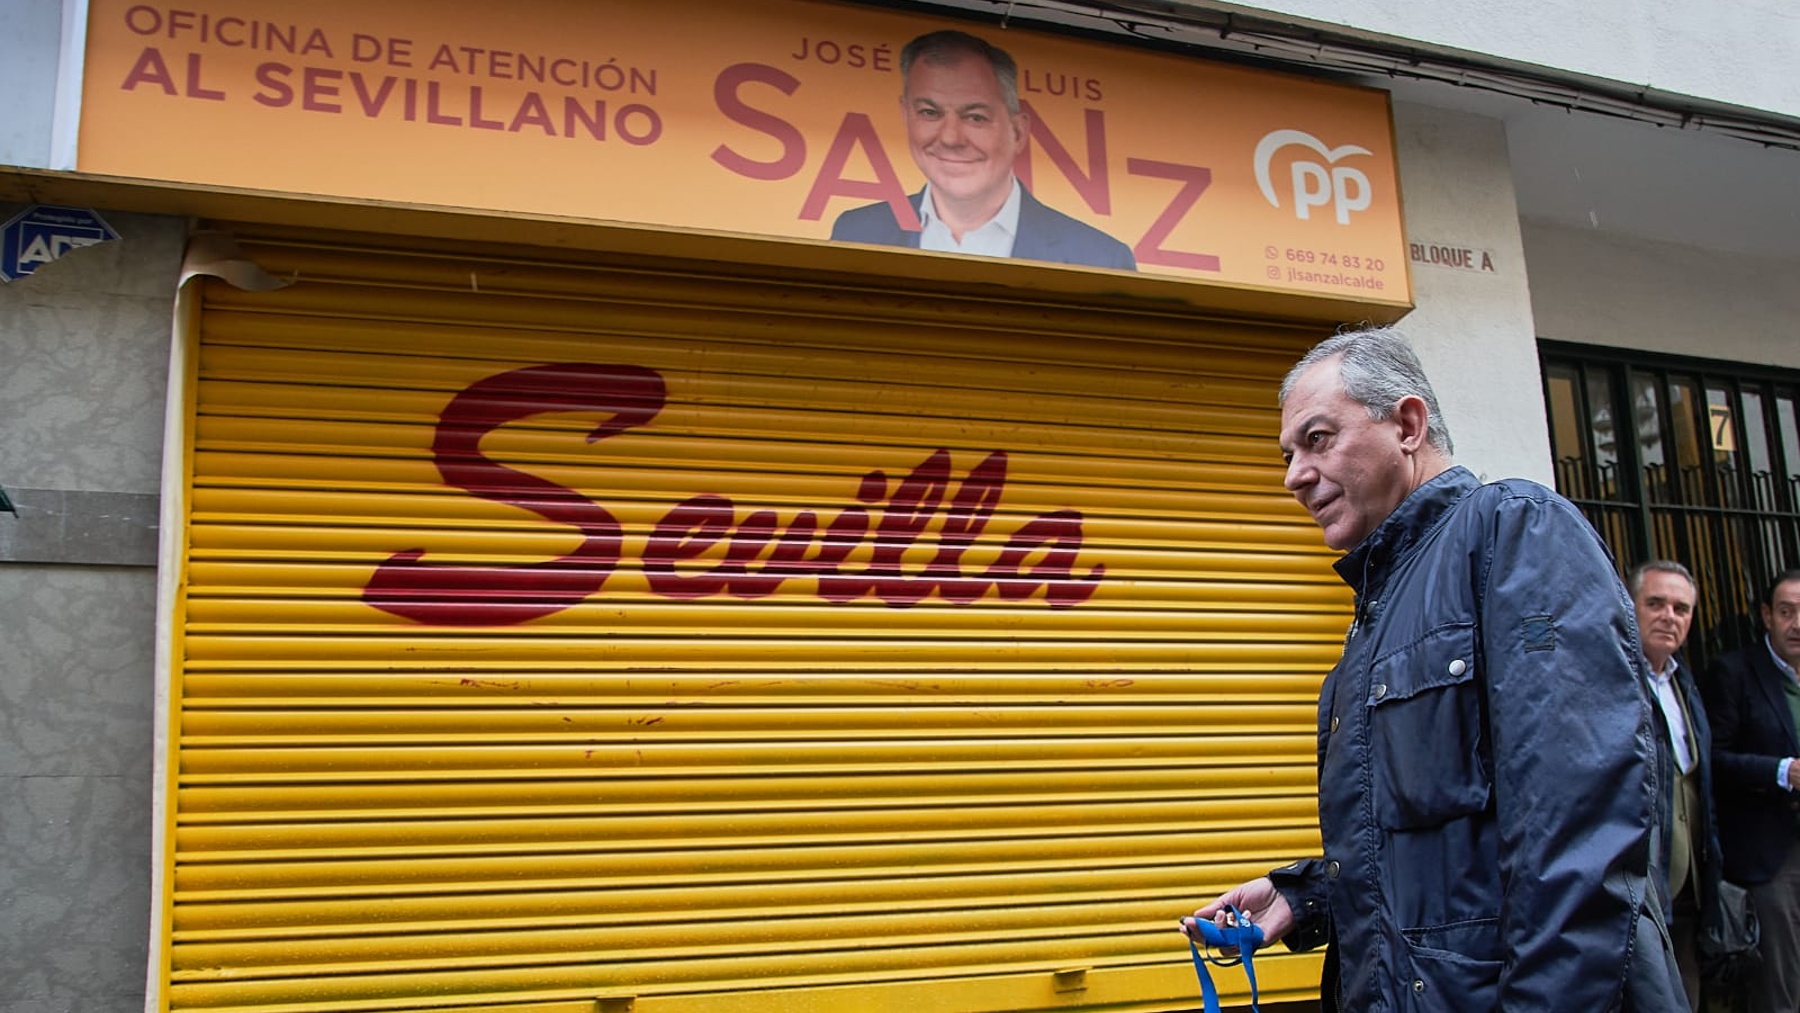 José Luis Sanz, candidato del PP a la Alcaldía de Sevilla, frente a la sede que utilizará en campaña (PP).